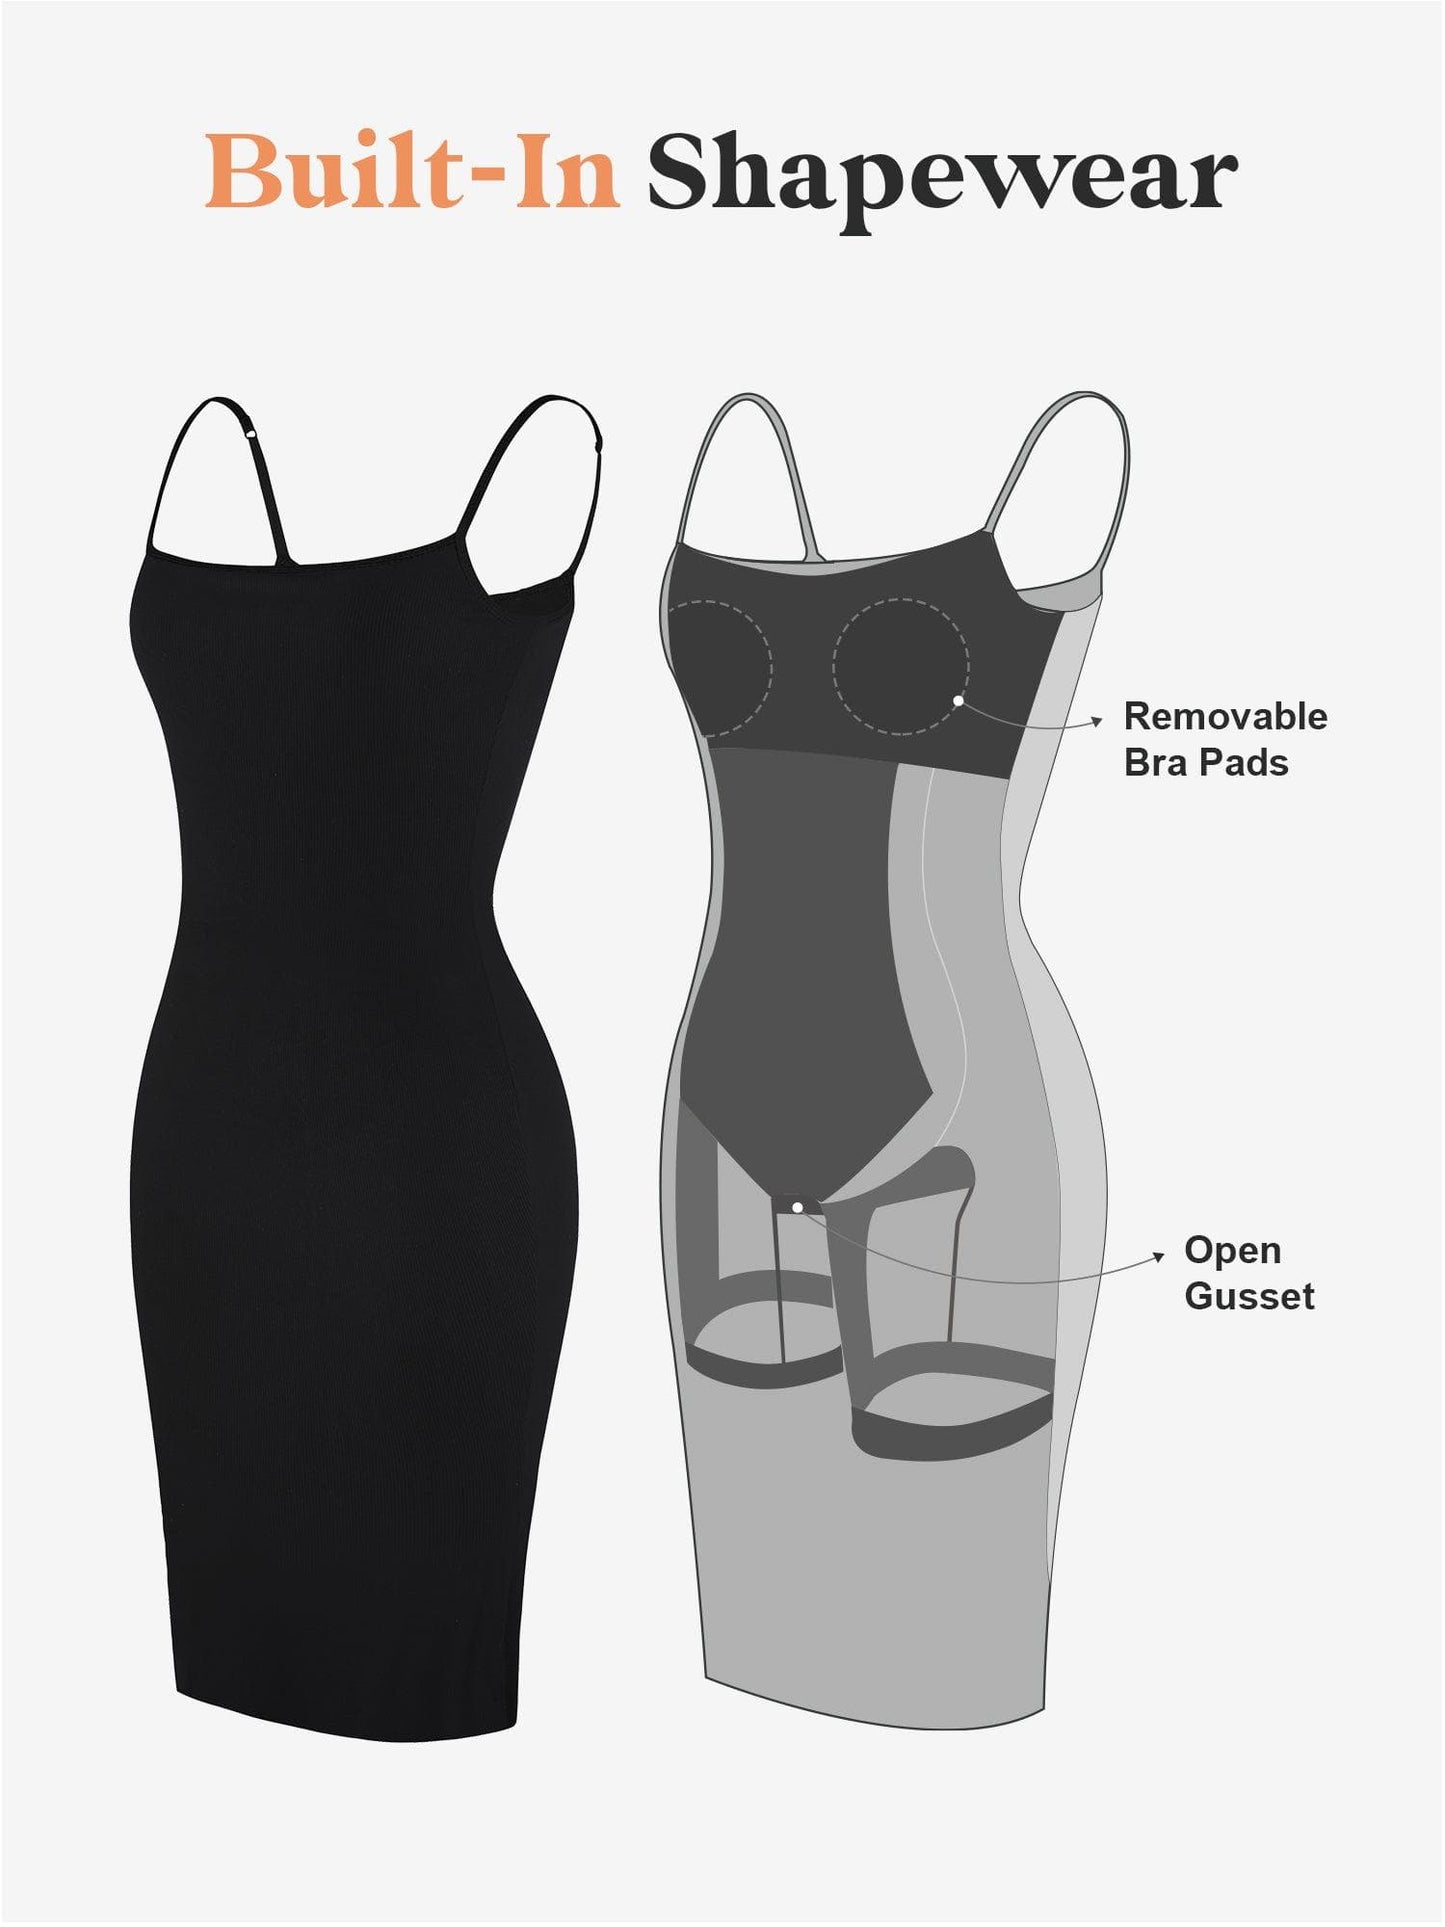 Built-In Shapewear Modal Multi-Style Dresses